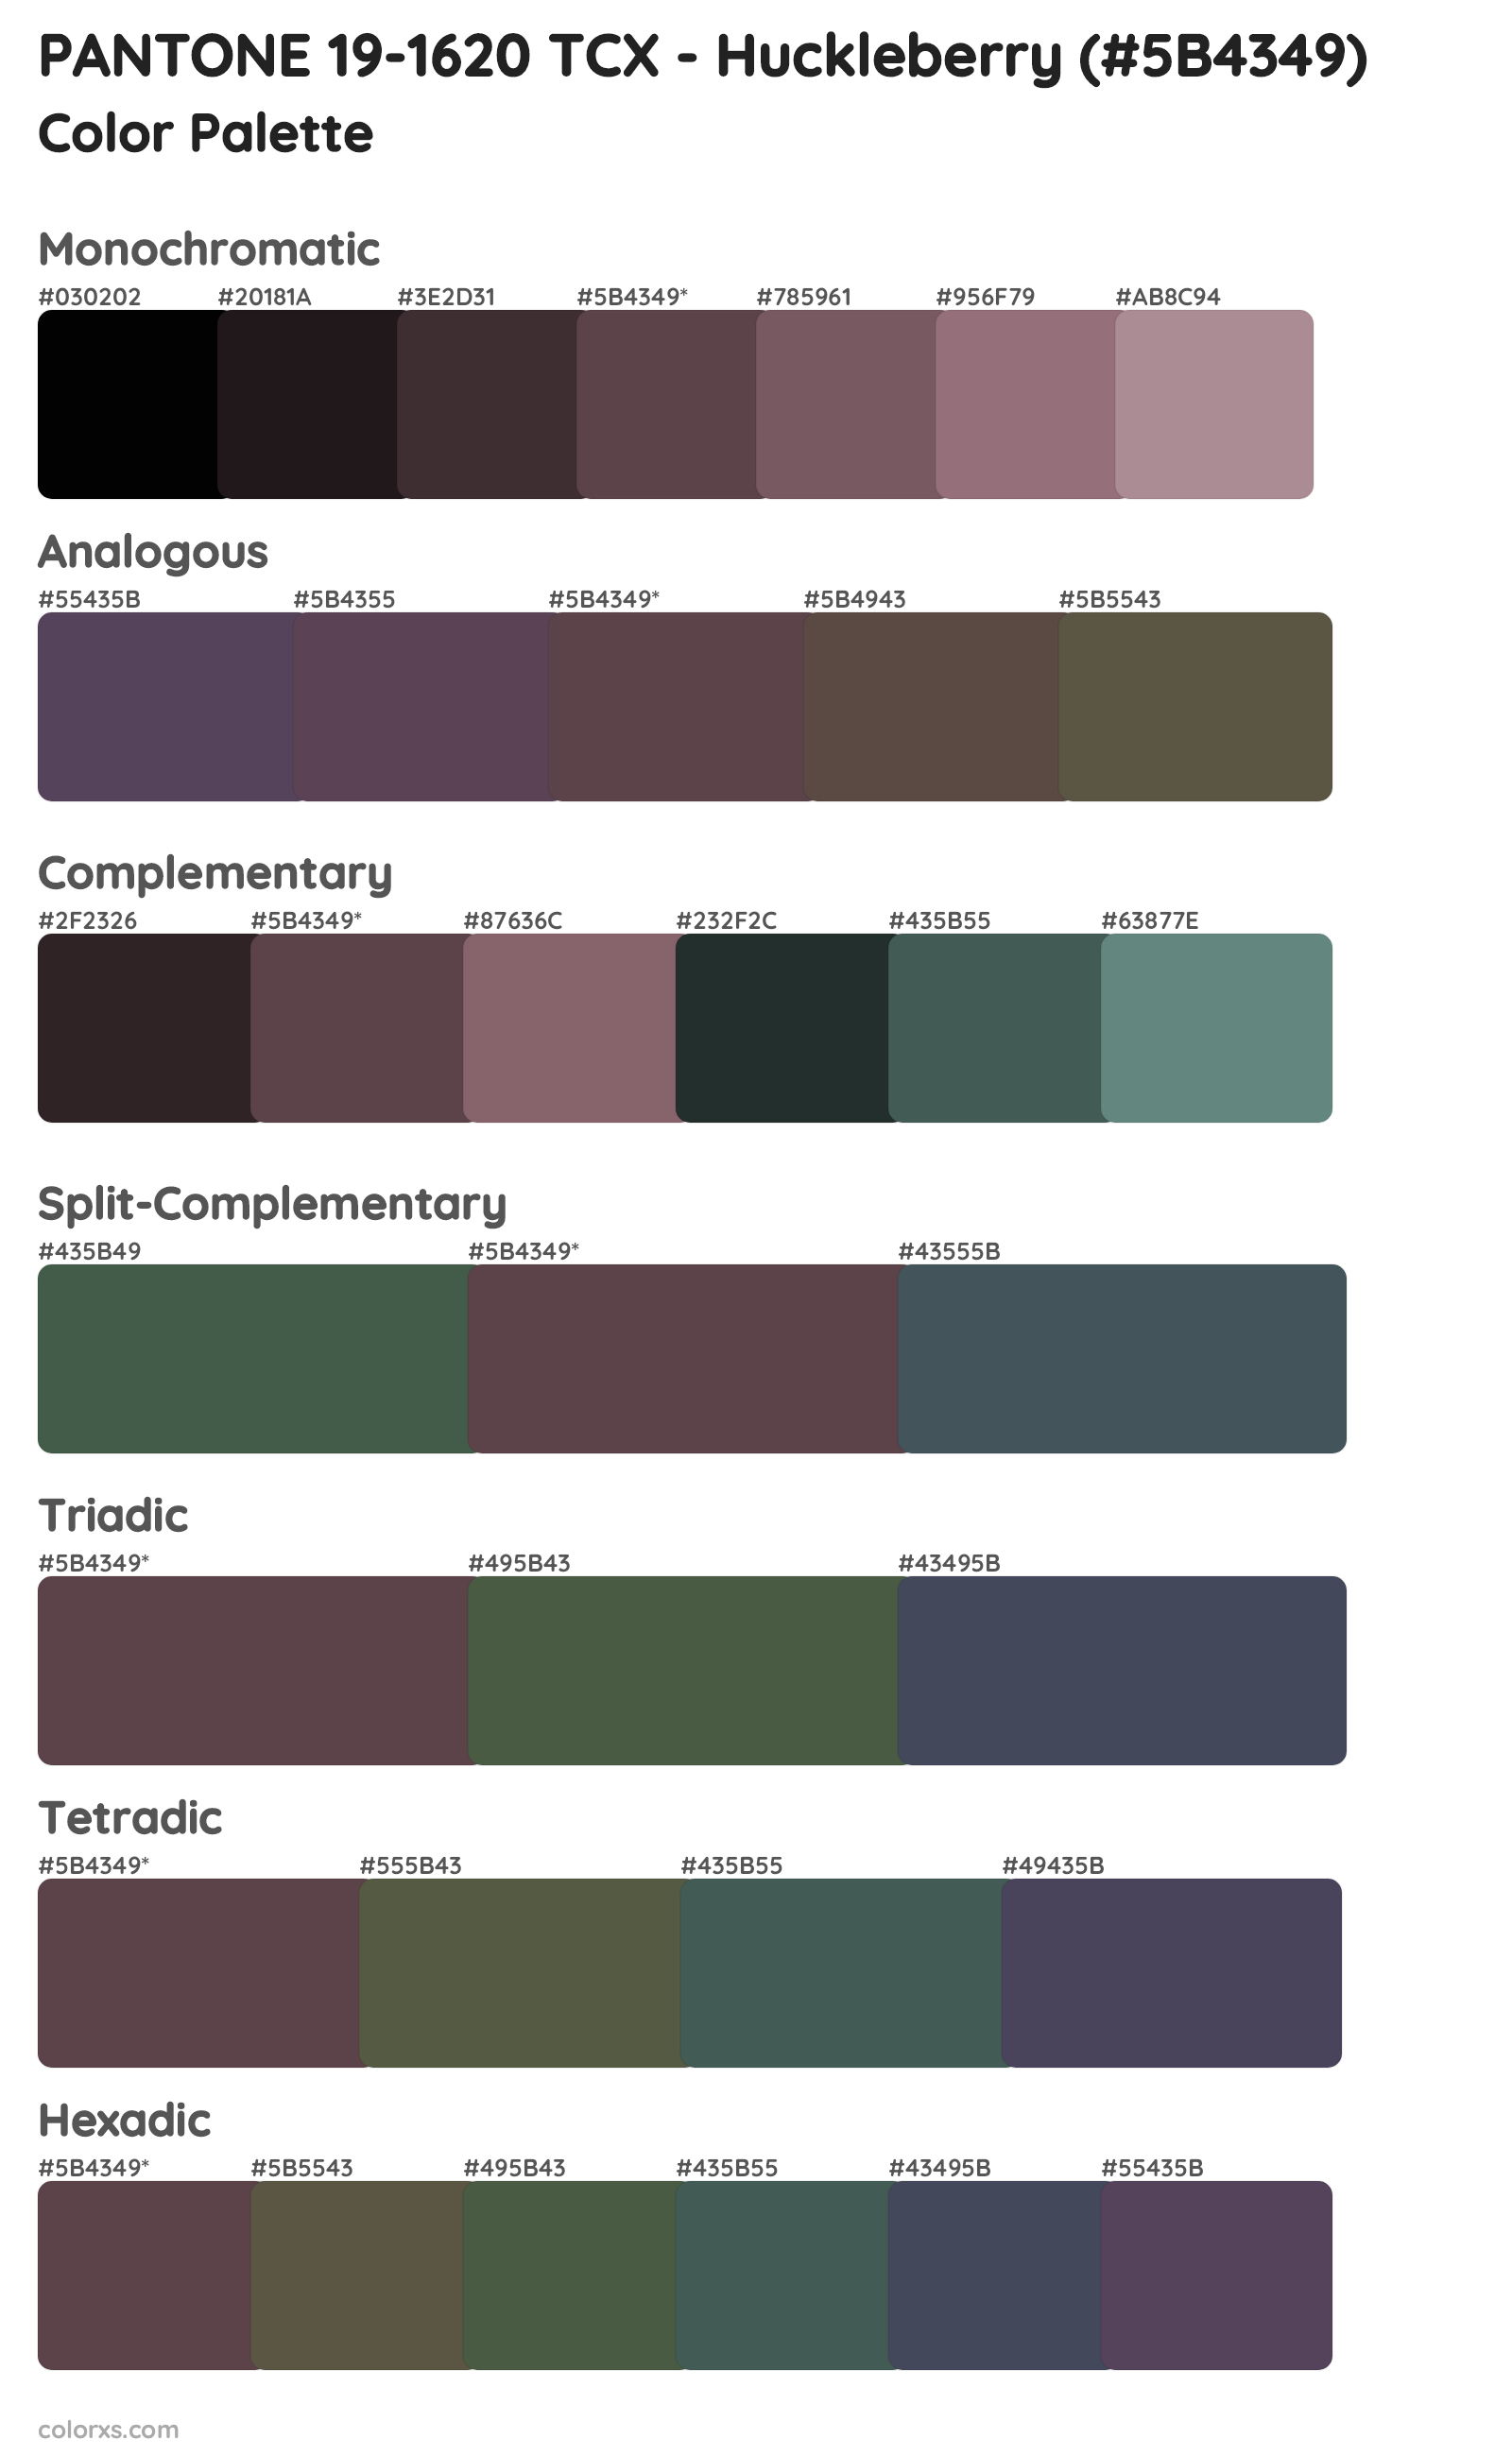 PANTONE 19-1620 TCX - Huckleberry Color Scheme Palettes